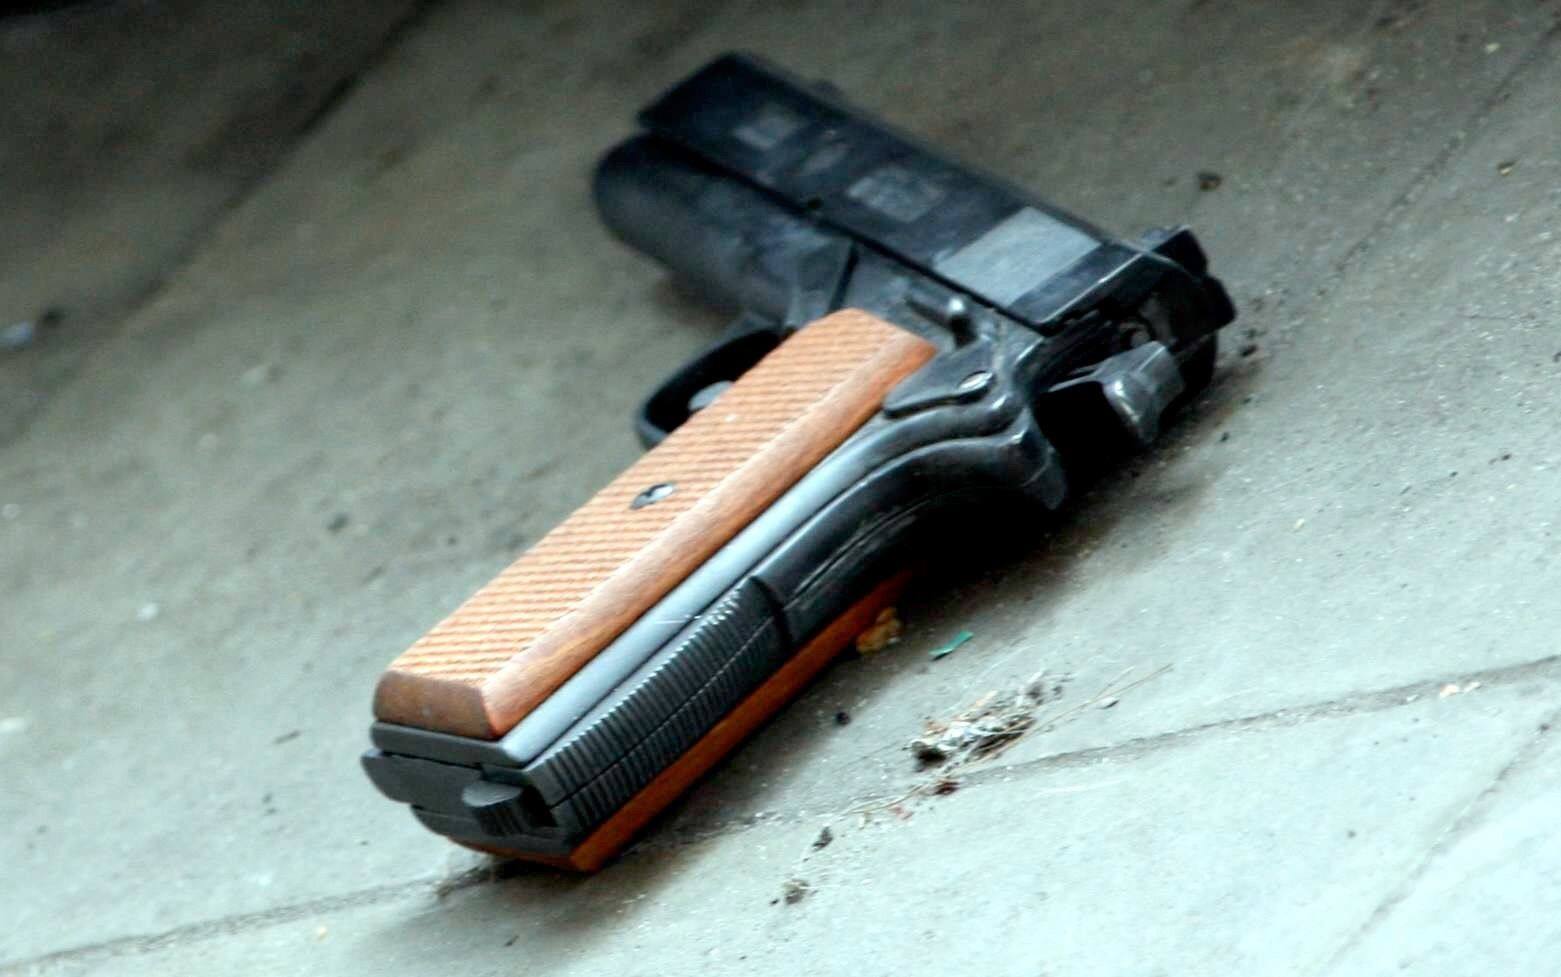 Vendus légalement en Belgique, des pistolets d'alarme sont de plus en plus  transformés en armes mortelles - La DH/Les Sports+